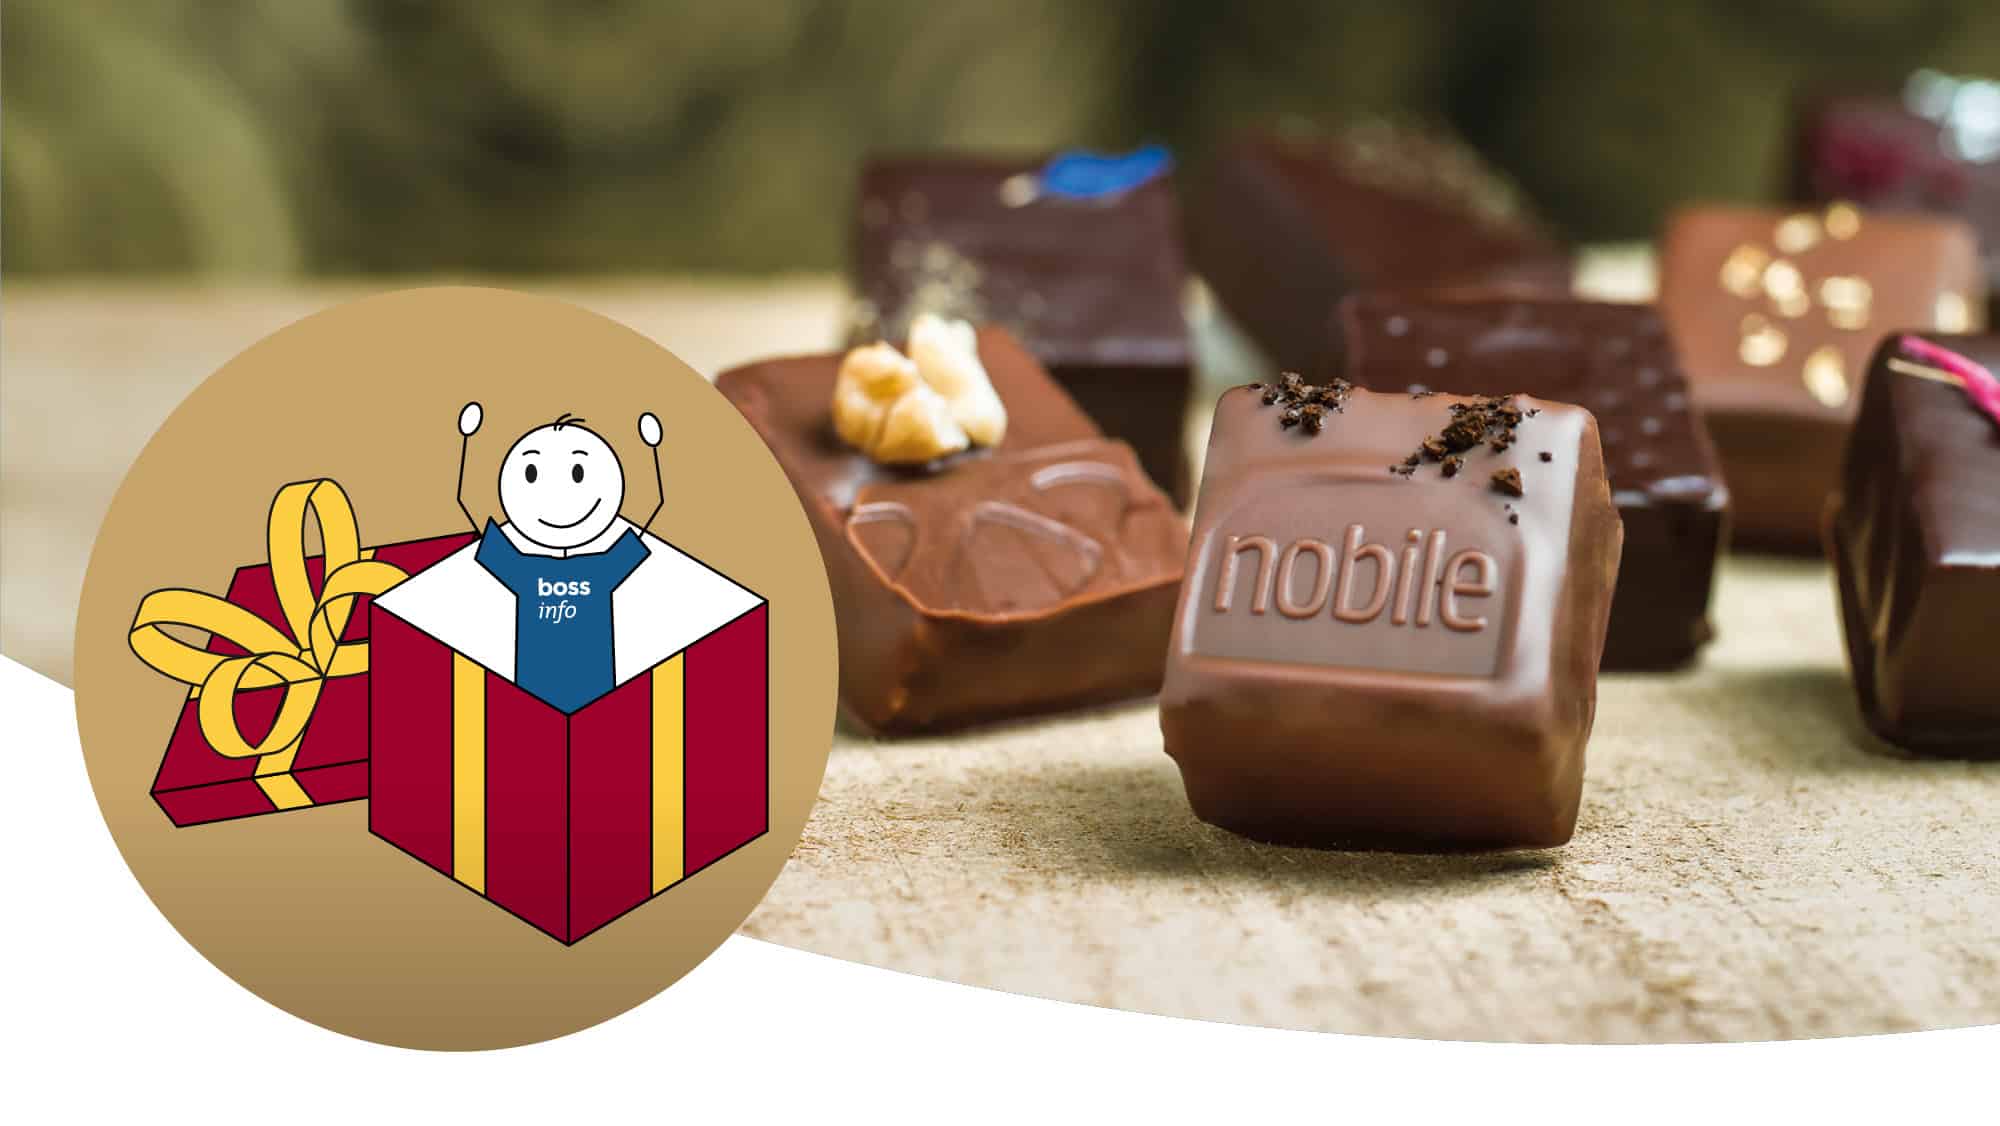 Wettbewerb – wir verlosen 3 Schoggiabos der Cioccolateria Nobile